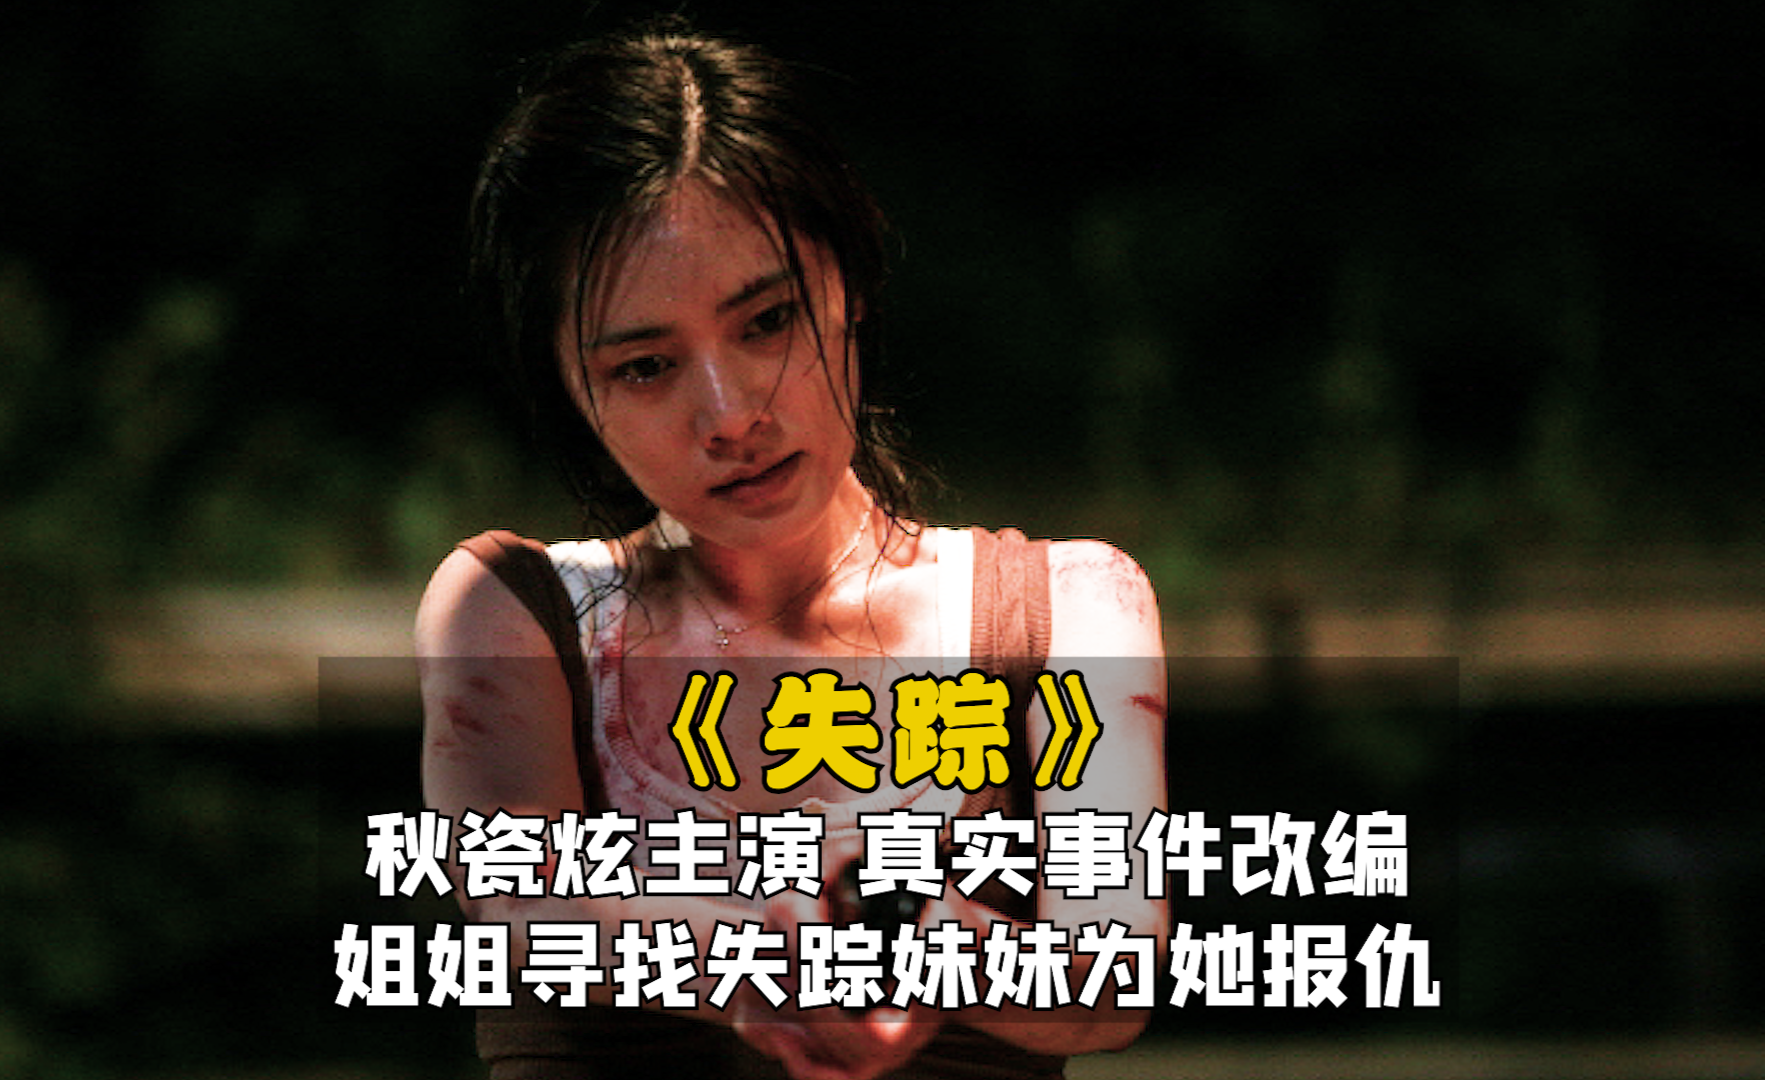 秋瓷炫主演韩国电影失踪真实案件改编姐姐寻找失踪妹妹为她报仇